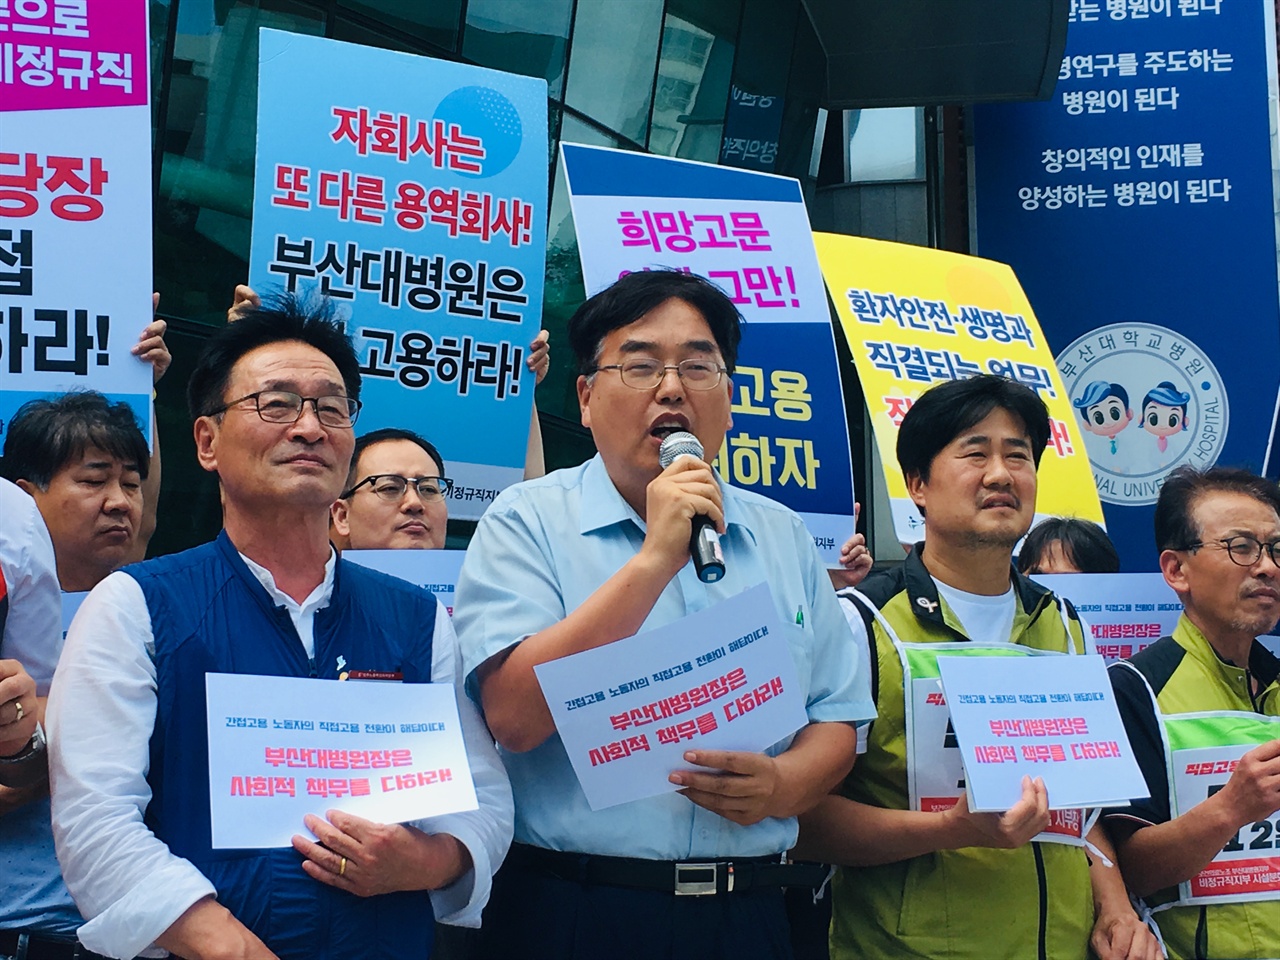 부산대학교 민주동문회 신병륜 회장 발언 모습